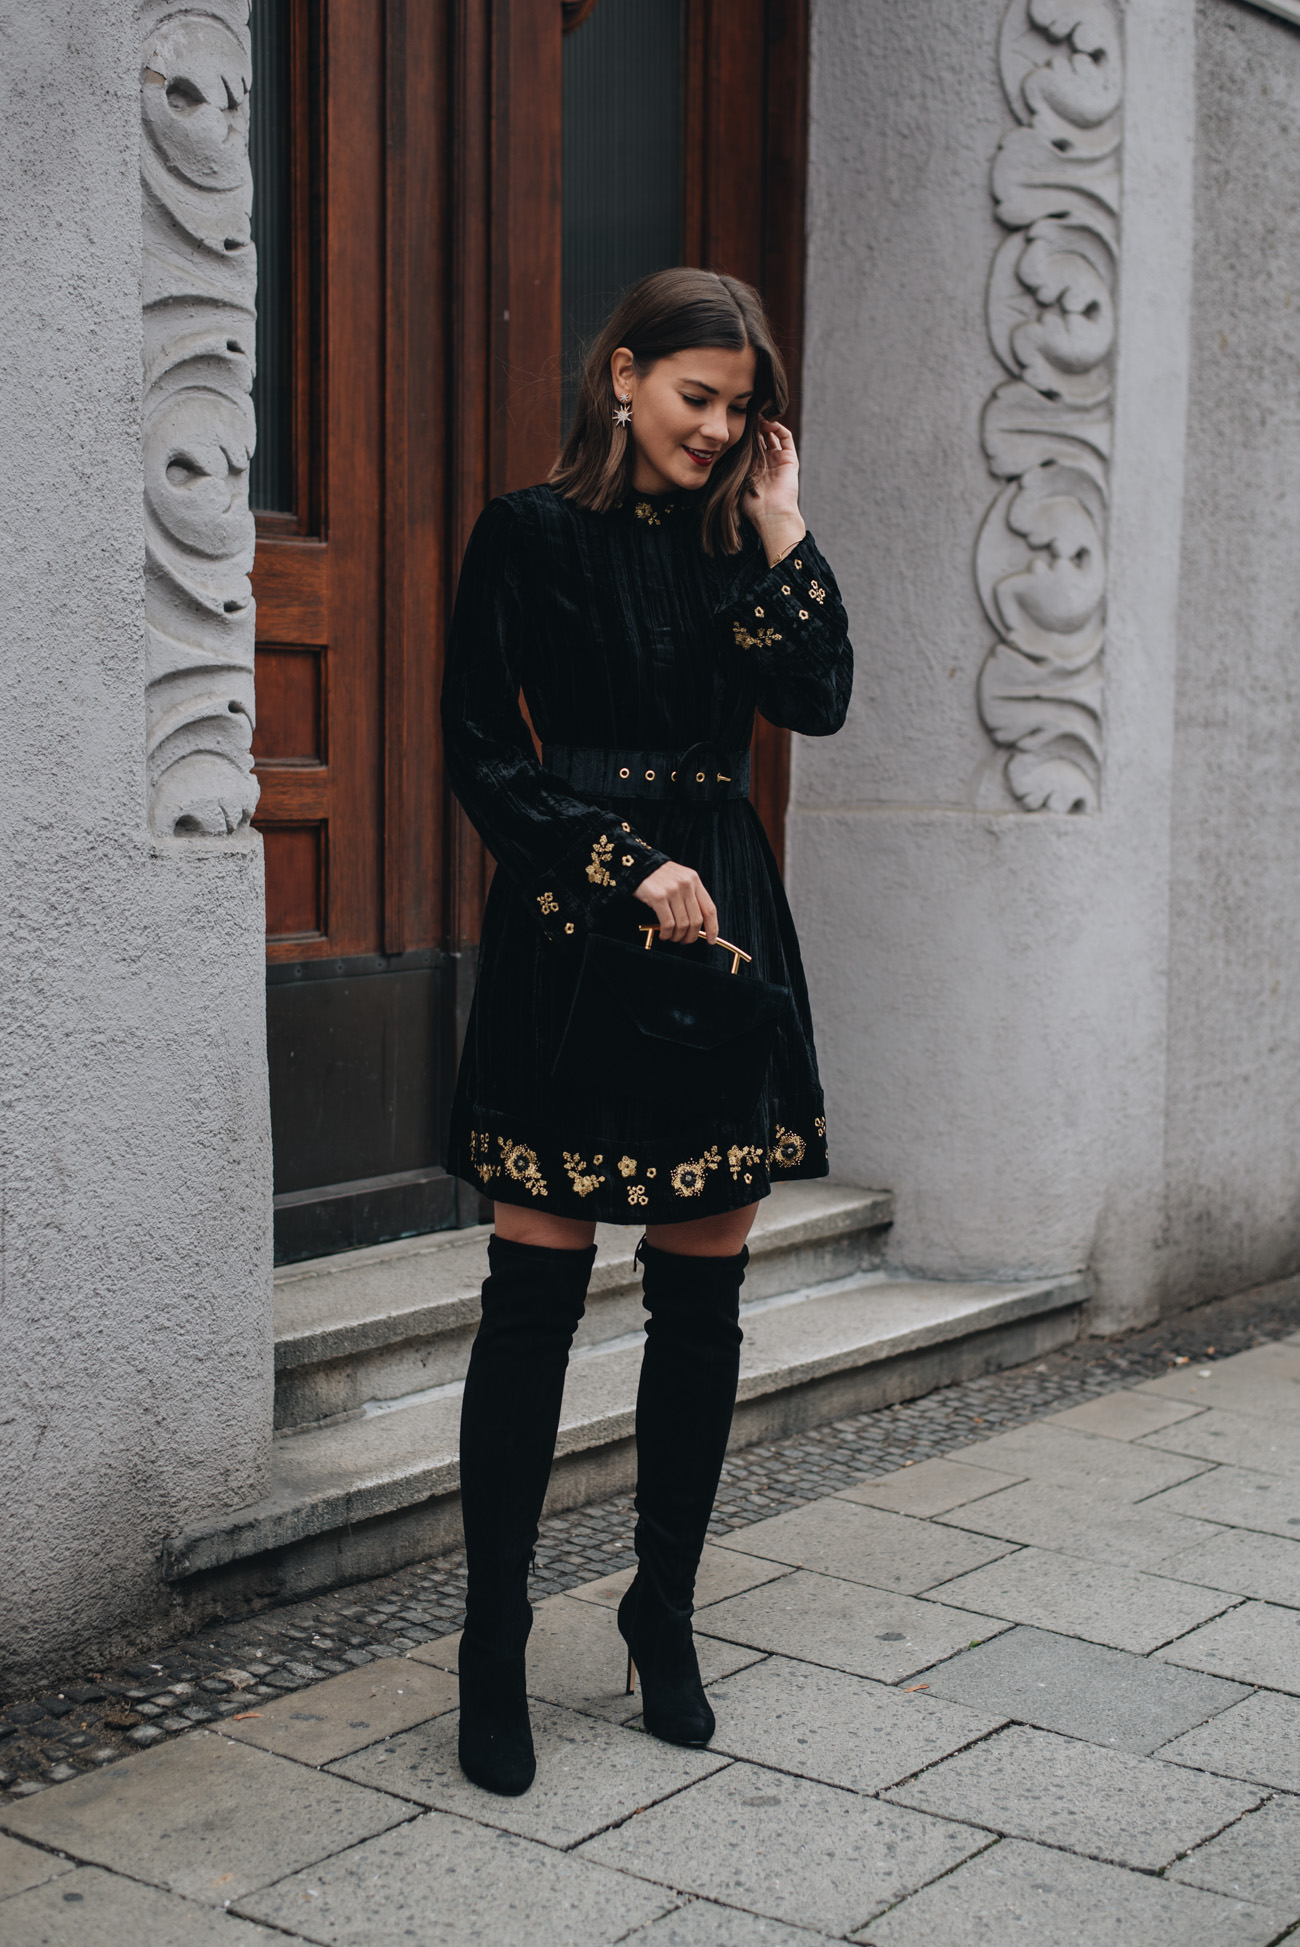 München-Fashionbloggerin-HIgh-End-Luxus-marken-mode-bloggerin-nina-schwichtenberg-streetstyle-mode-trends-herbst-winter-2017-fashiioncarpet